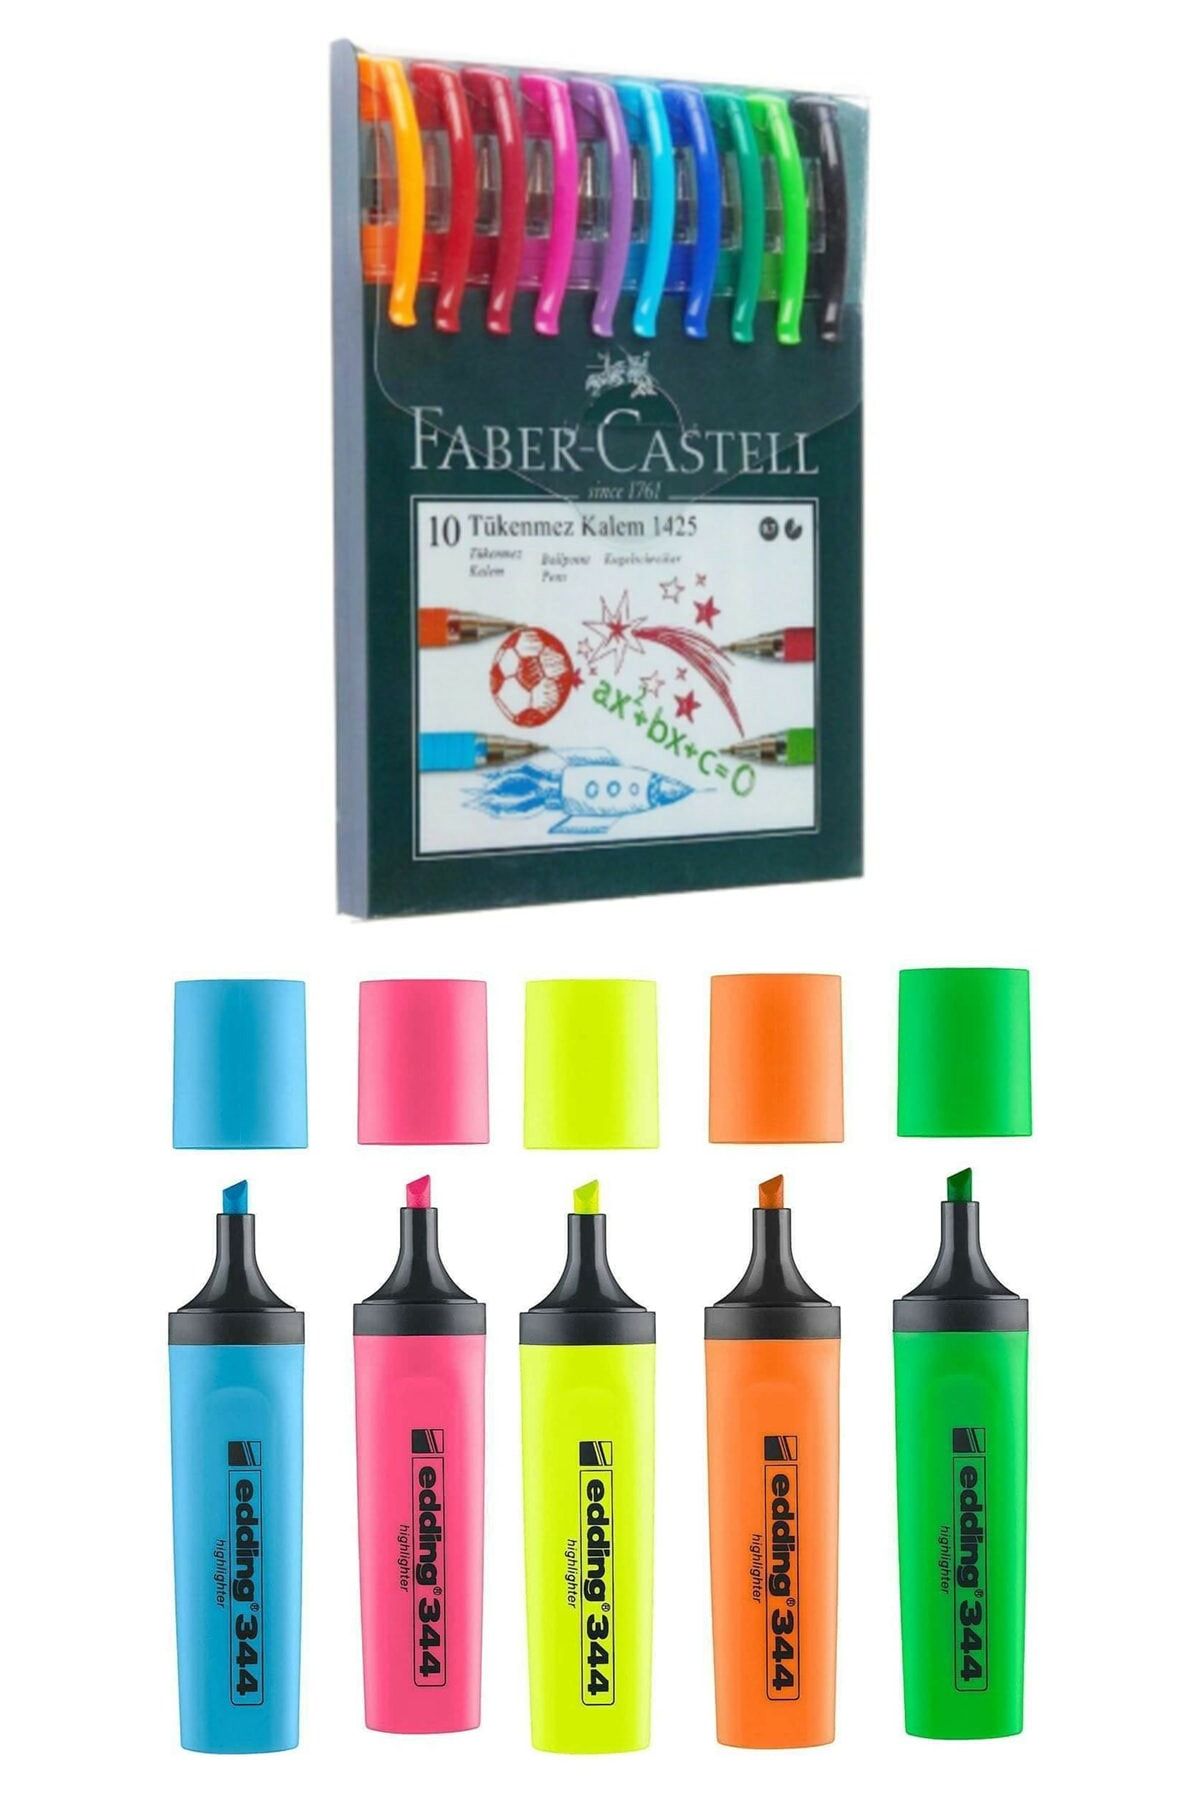 Faber Castell 10 Renk Tükenmez Kalem 1425 ve Edding e-344 Fosforlu Kalemi 5li Poşet Karışık